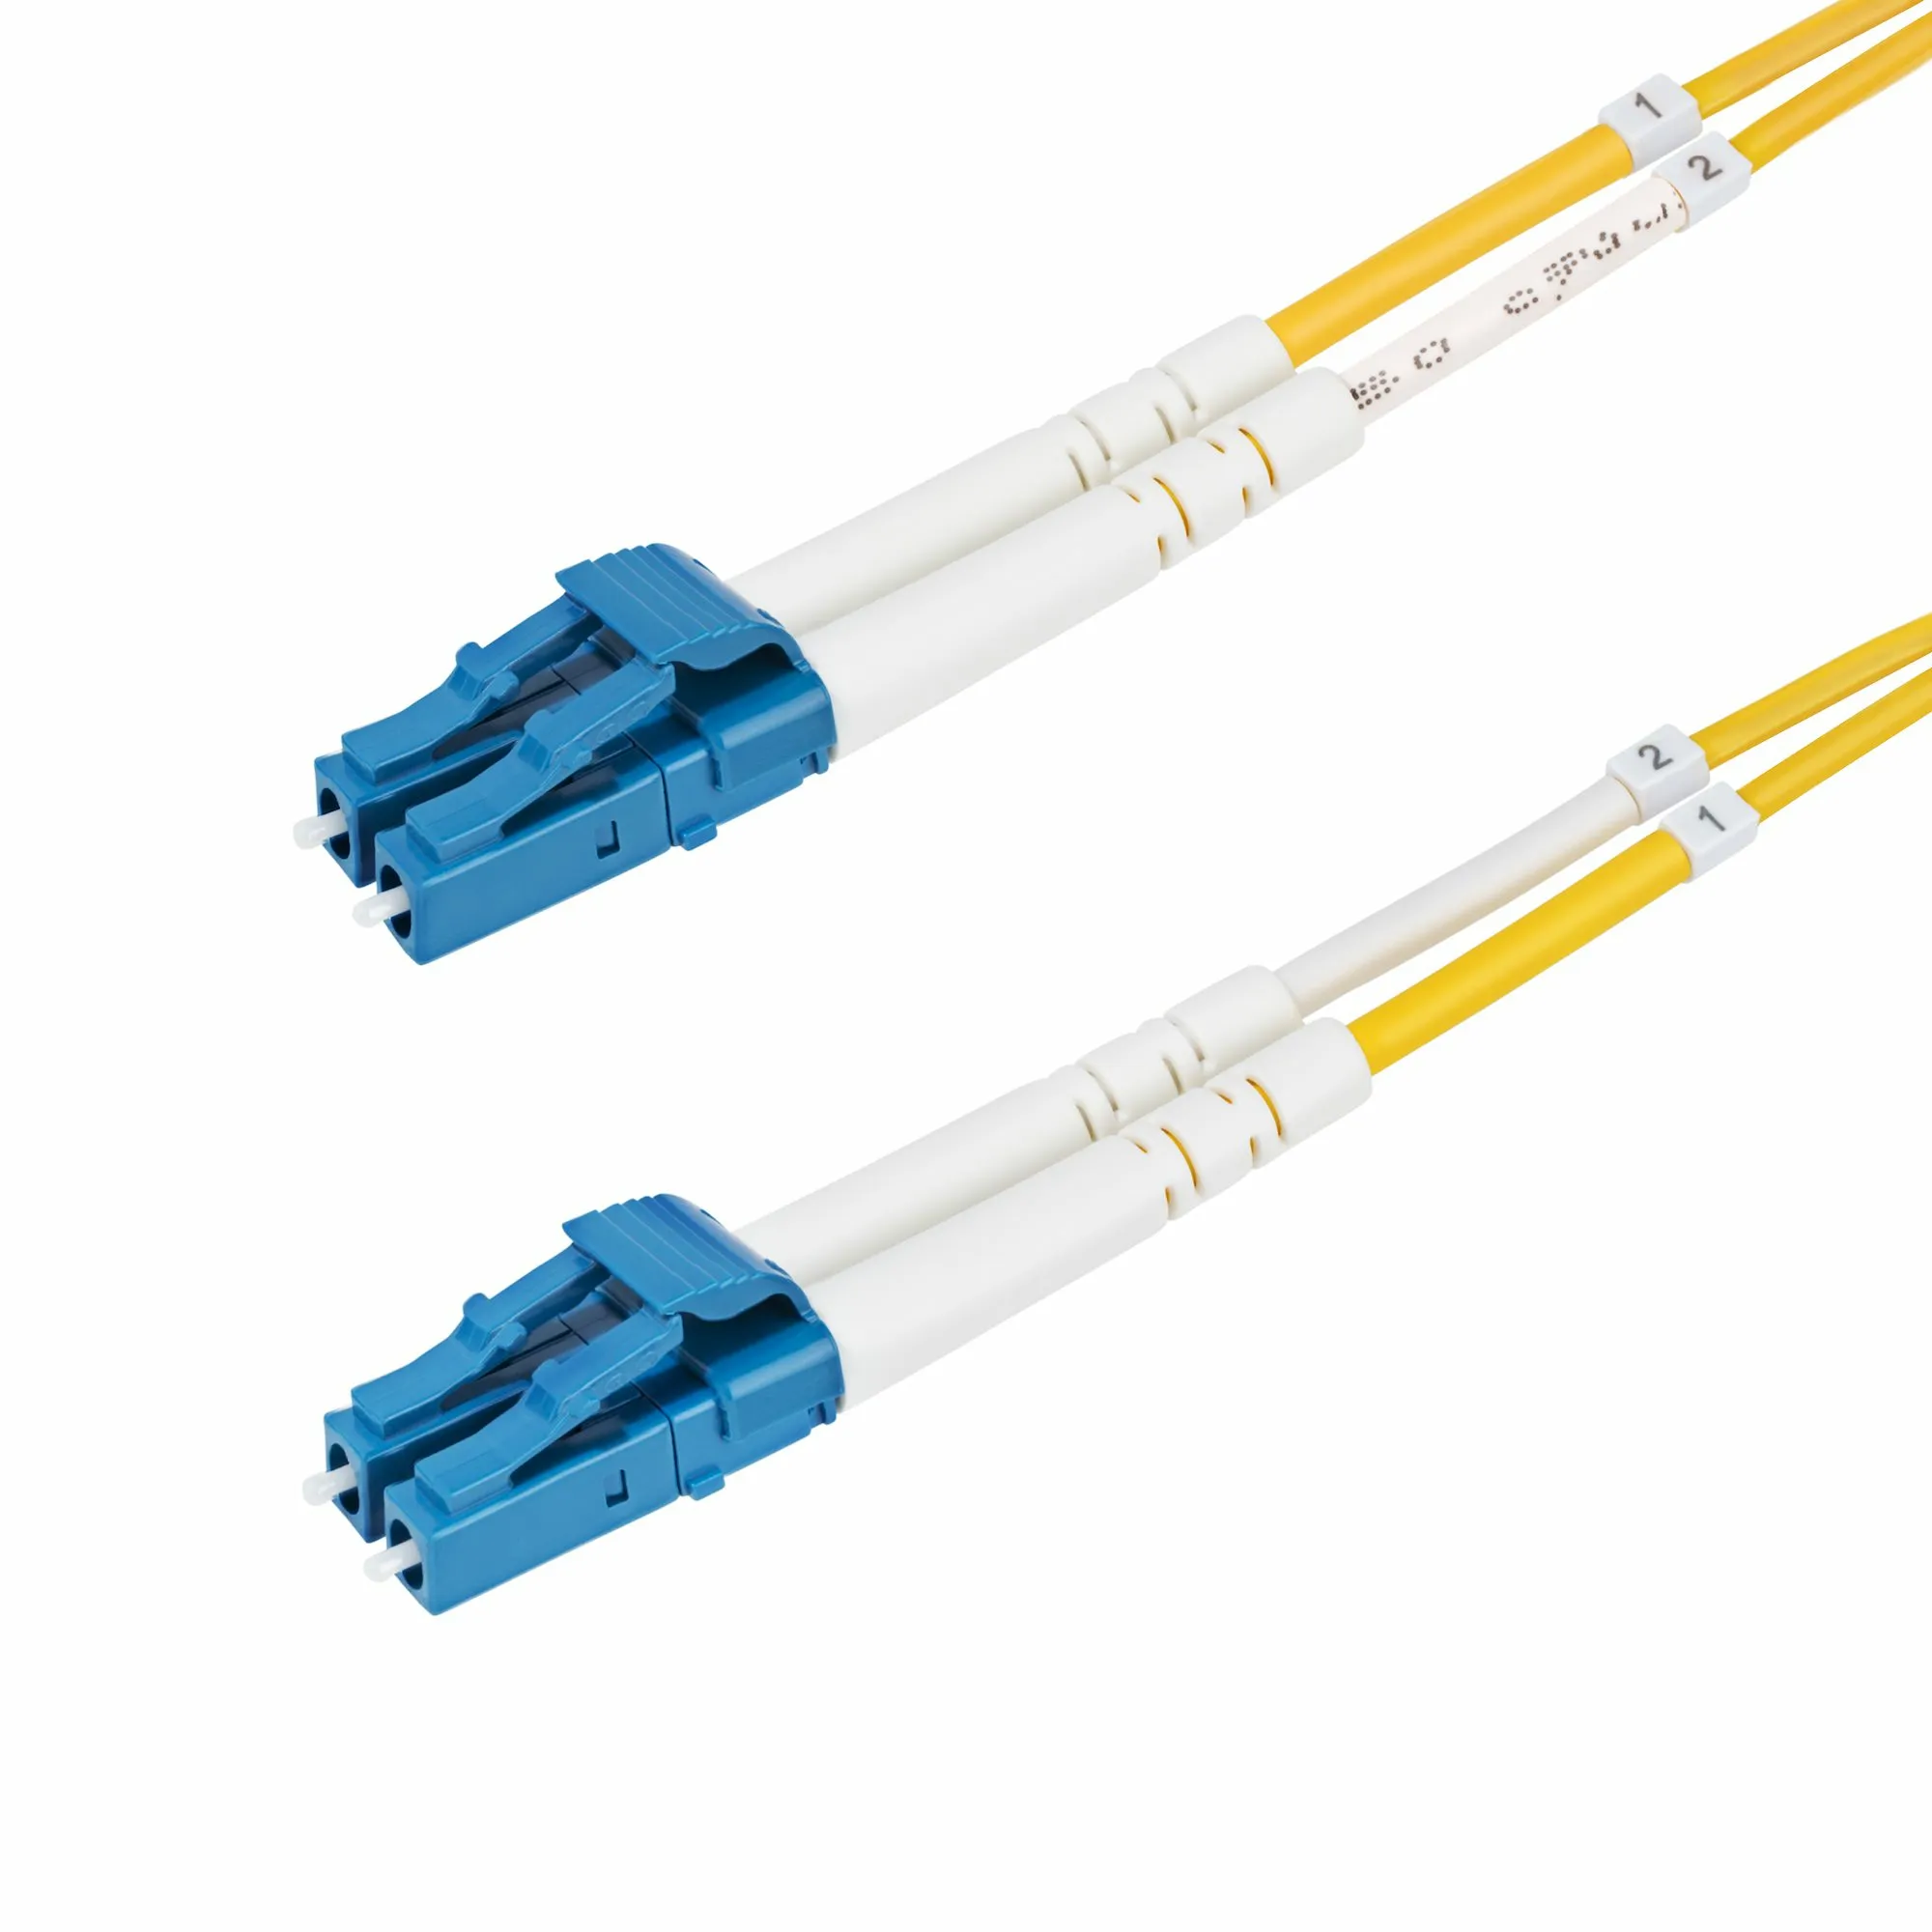 Achat StarTech.com Câble Fibre Optique de 20m Duplex Monomode au meilleur prix